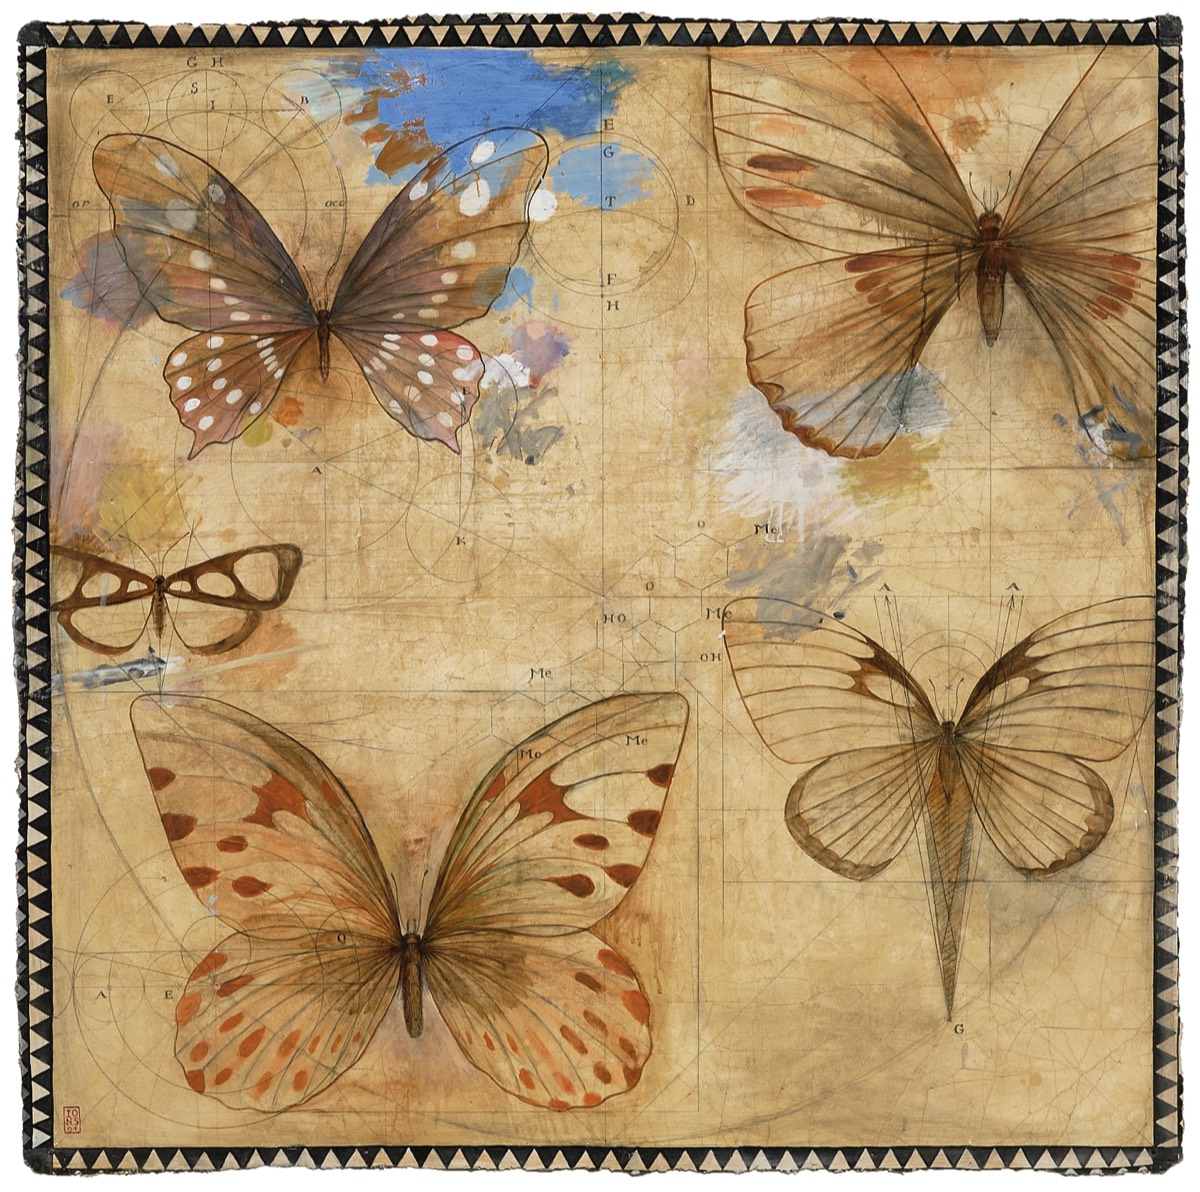 Papillons, 2001 - 160 x 160 cm